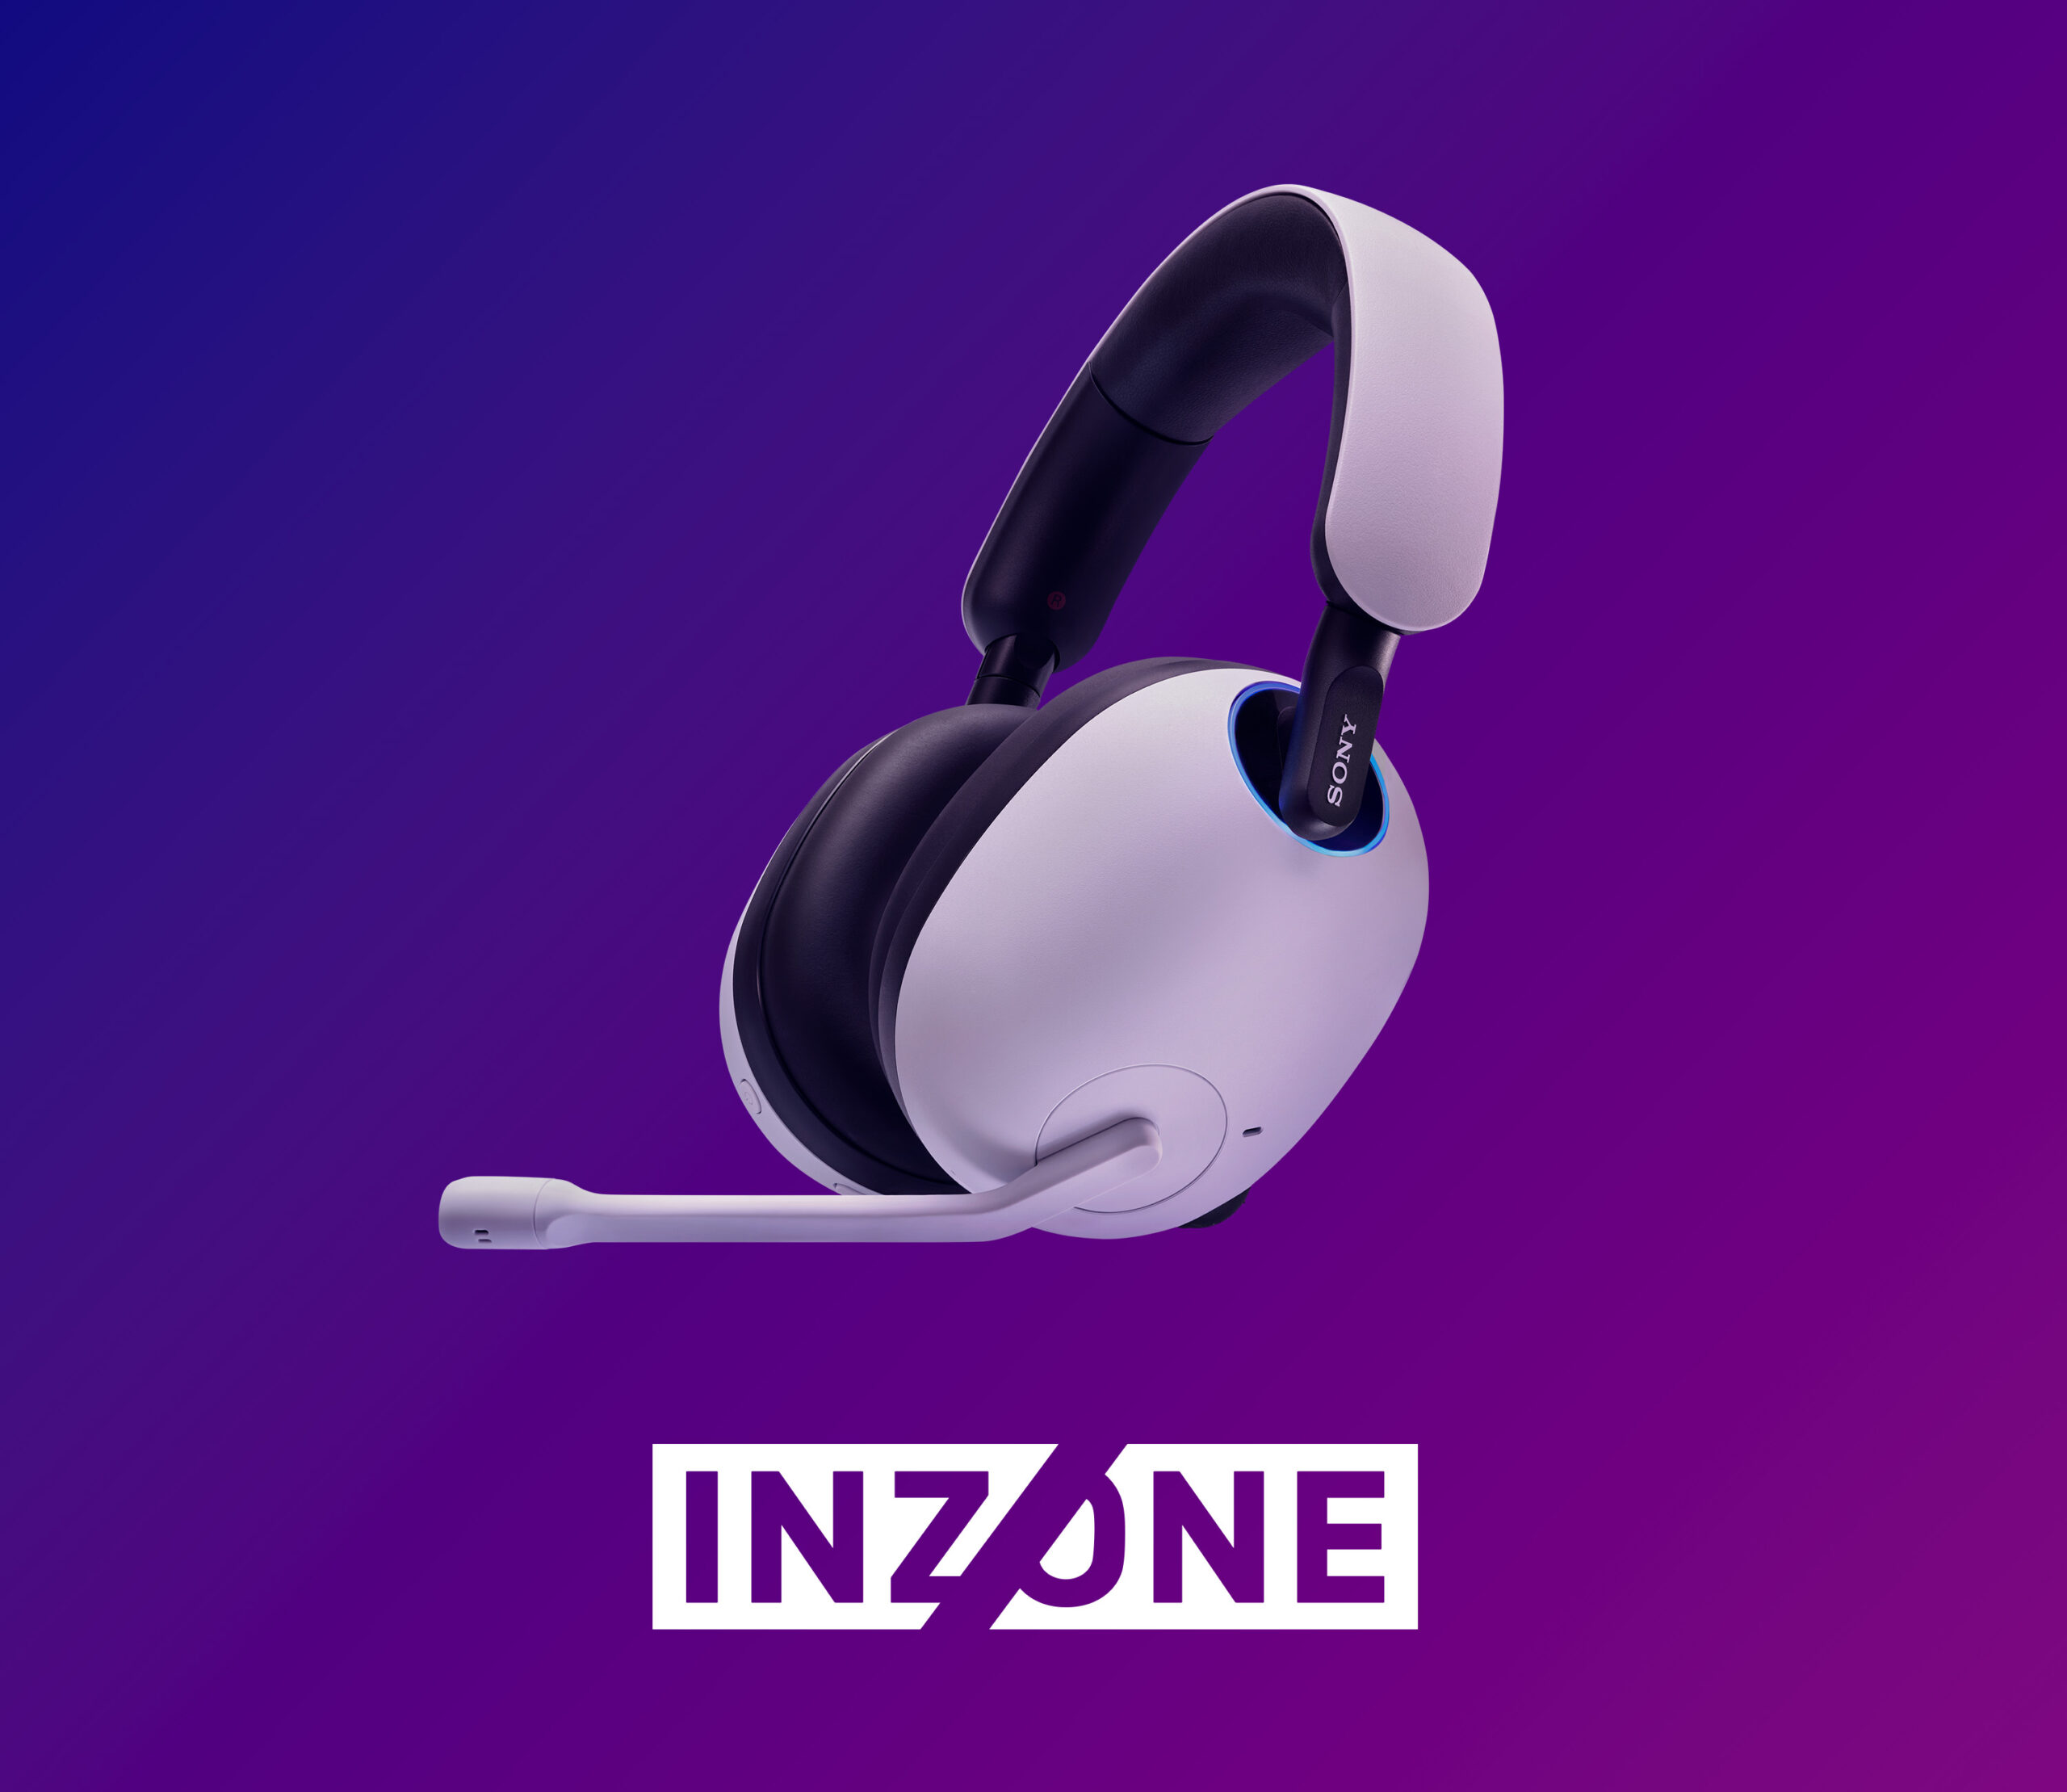 Sony lanzó su nueva línea de auriculares Inzone para gamers